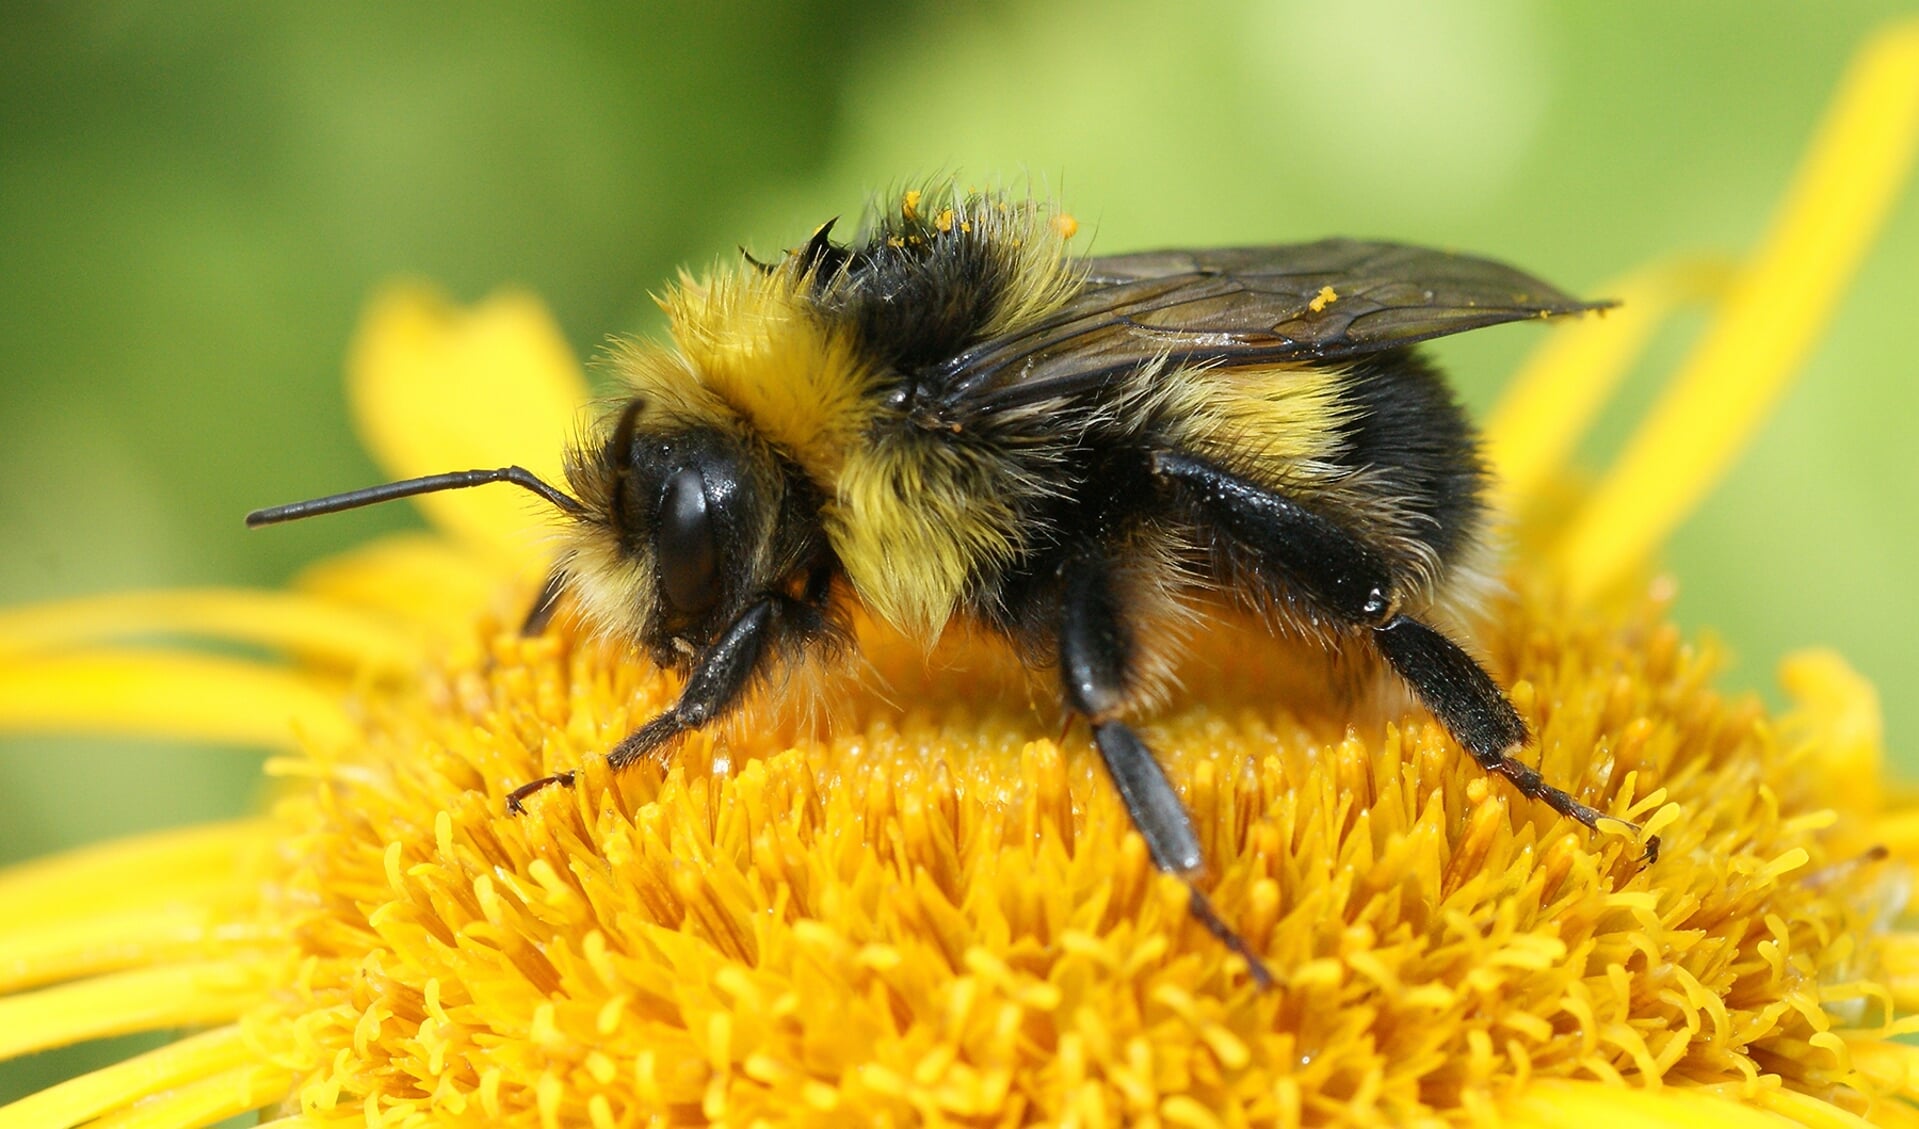 De koekoekshommel is een insect dat behoort tot de familie bijen en hommels. Foto: PR